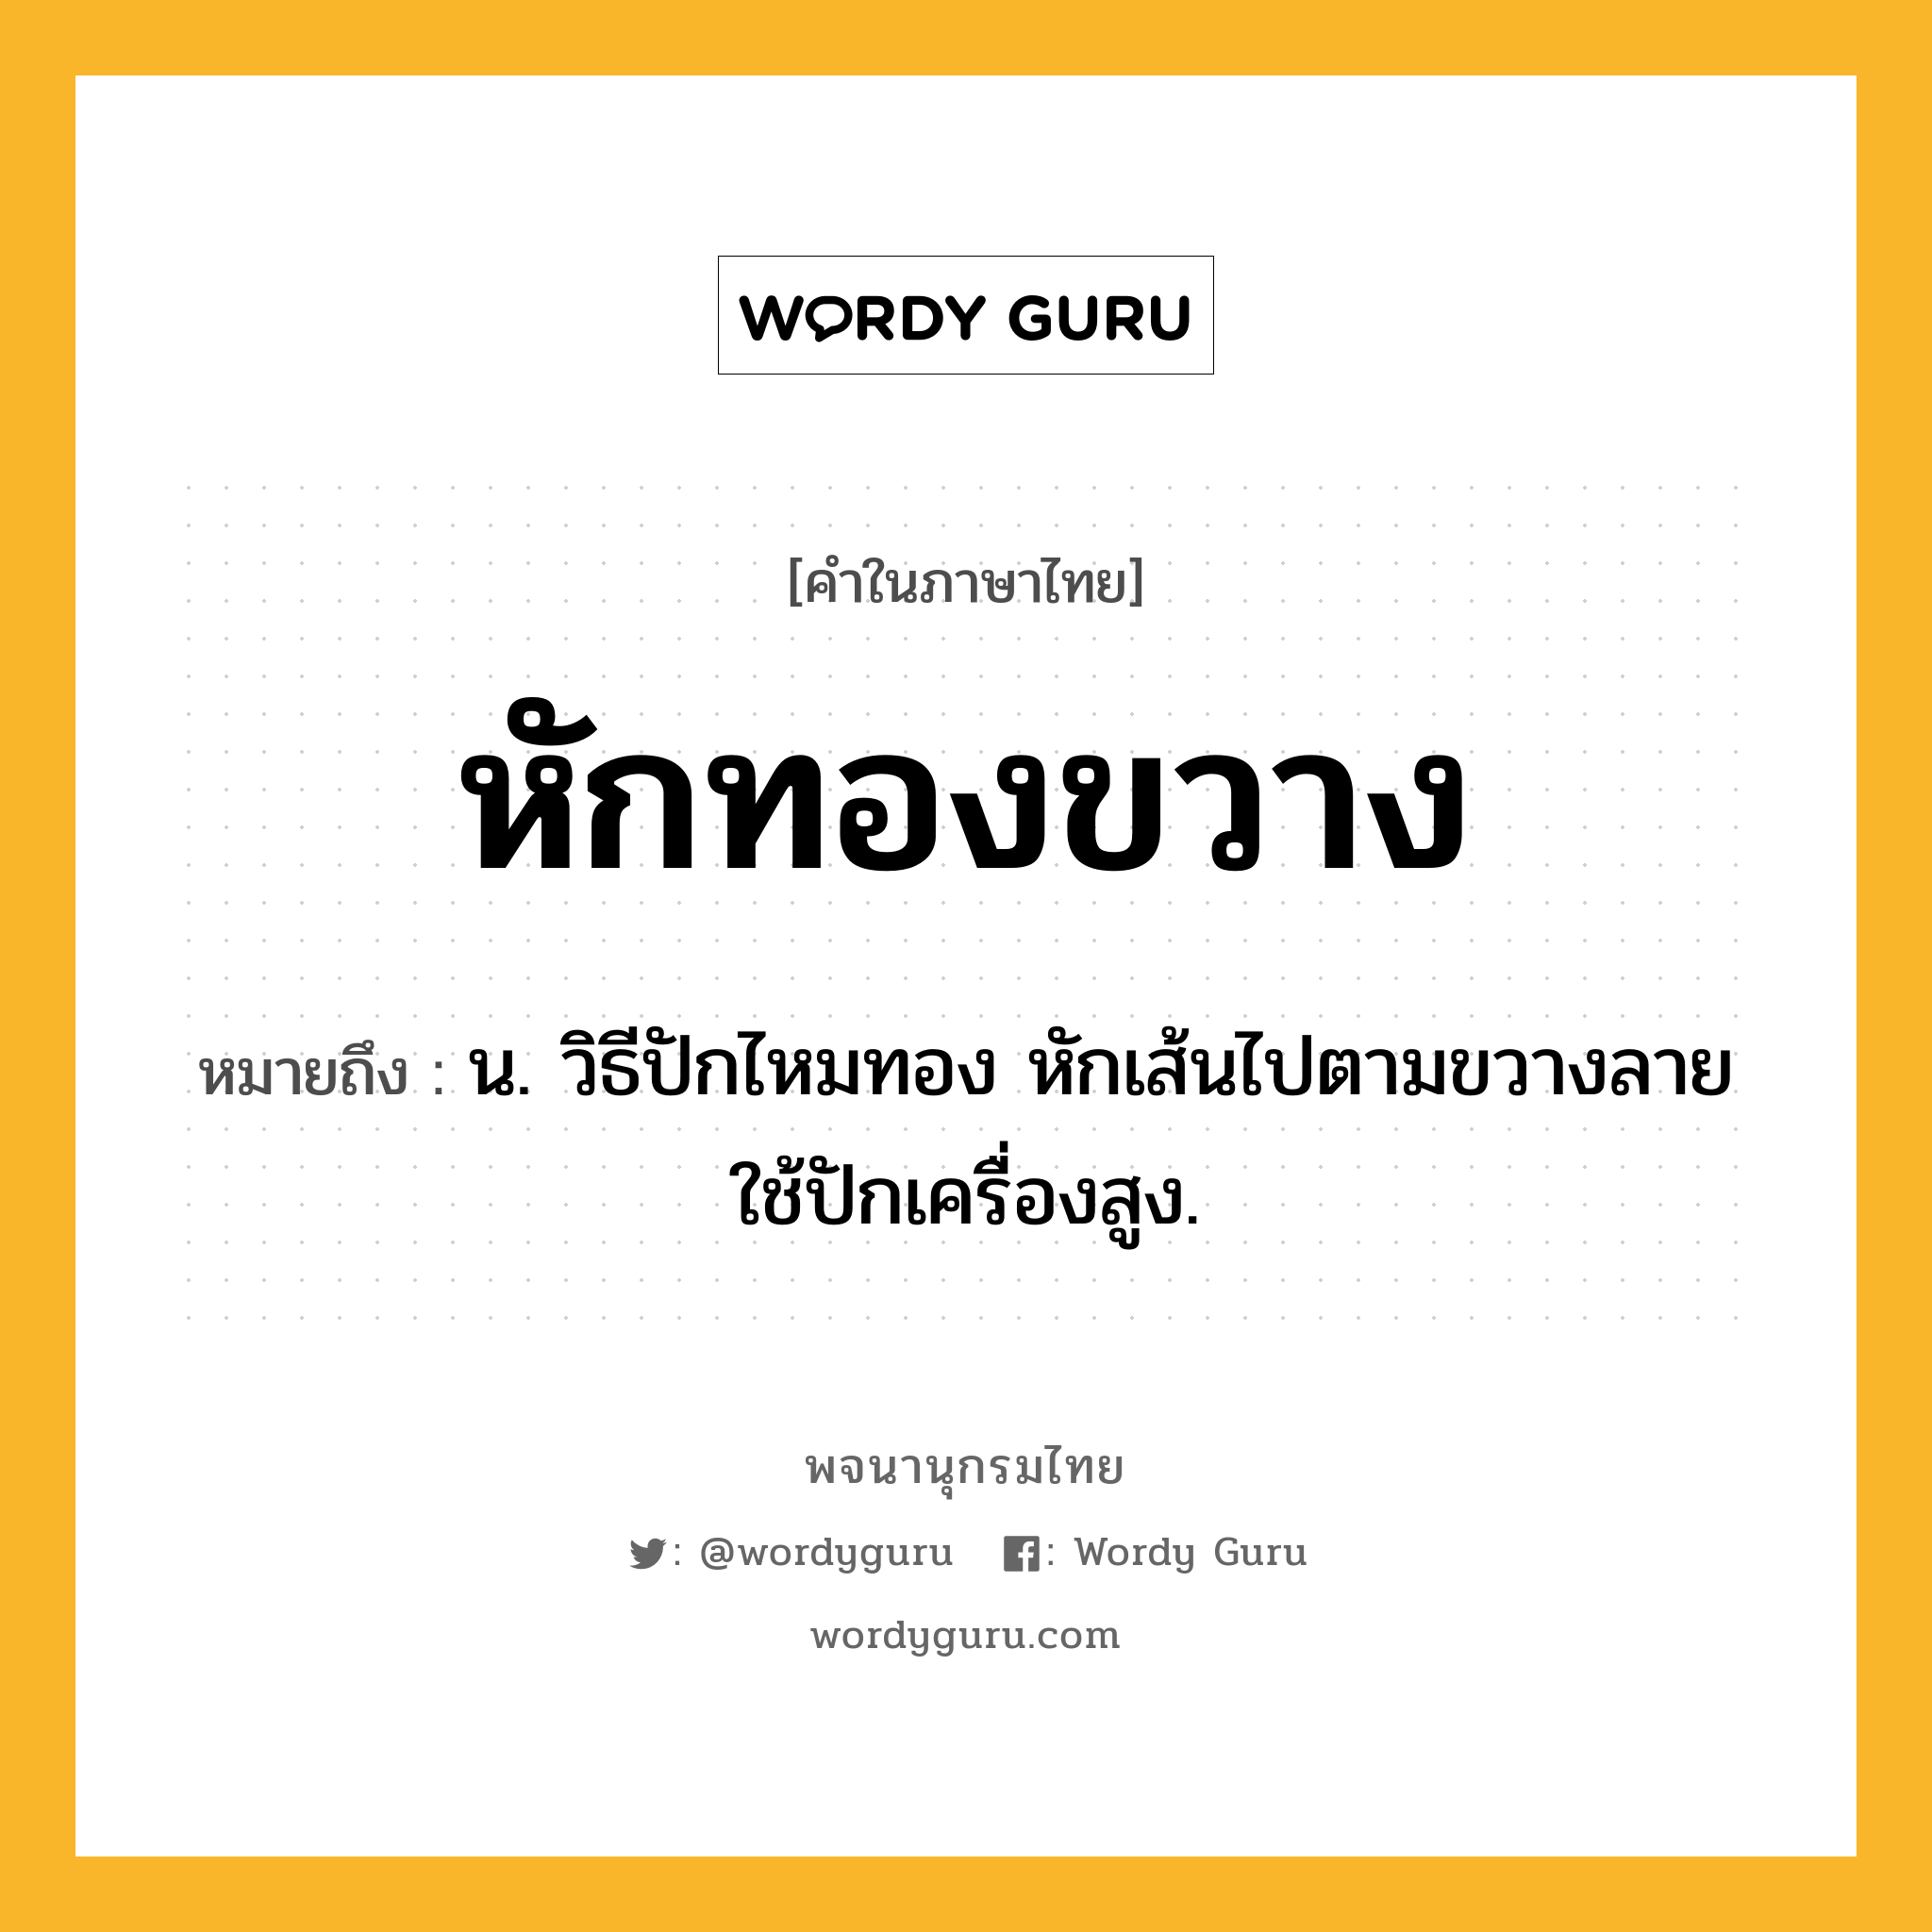 หักทองขวาง หมายถึงอะไร?, คำในภาษาไทย หักทองขวาง หมายถึง น. วิธีปักไหมทอง หักเส้นไปตามขวางลาย ใช้ปักเครื่องสูง.